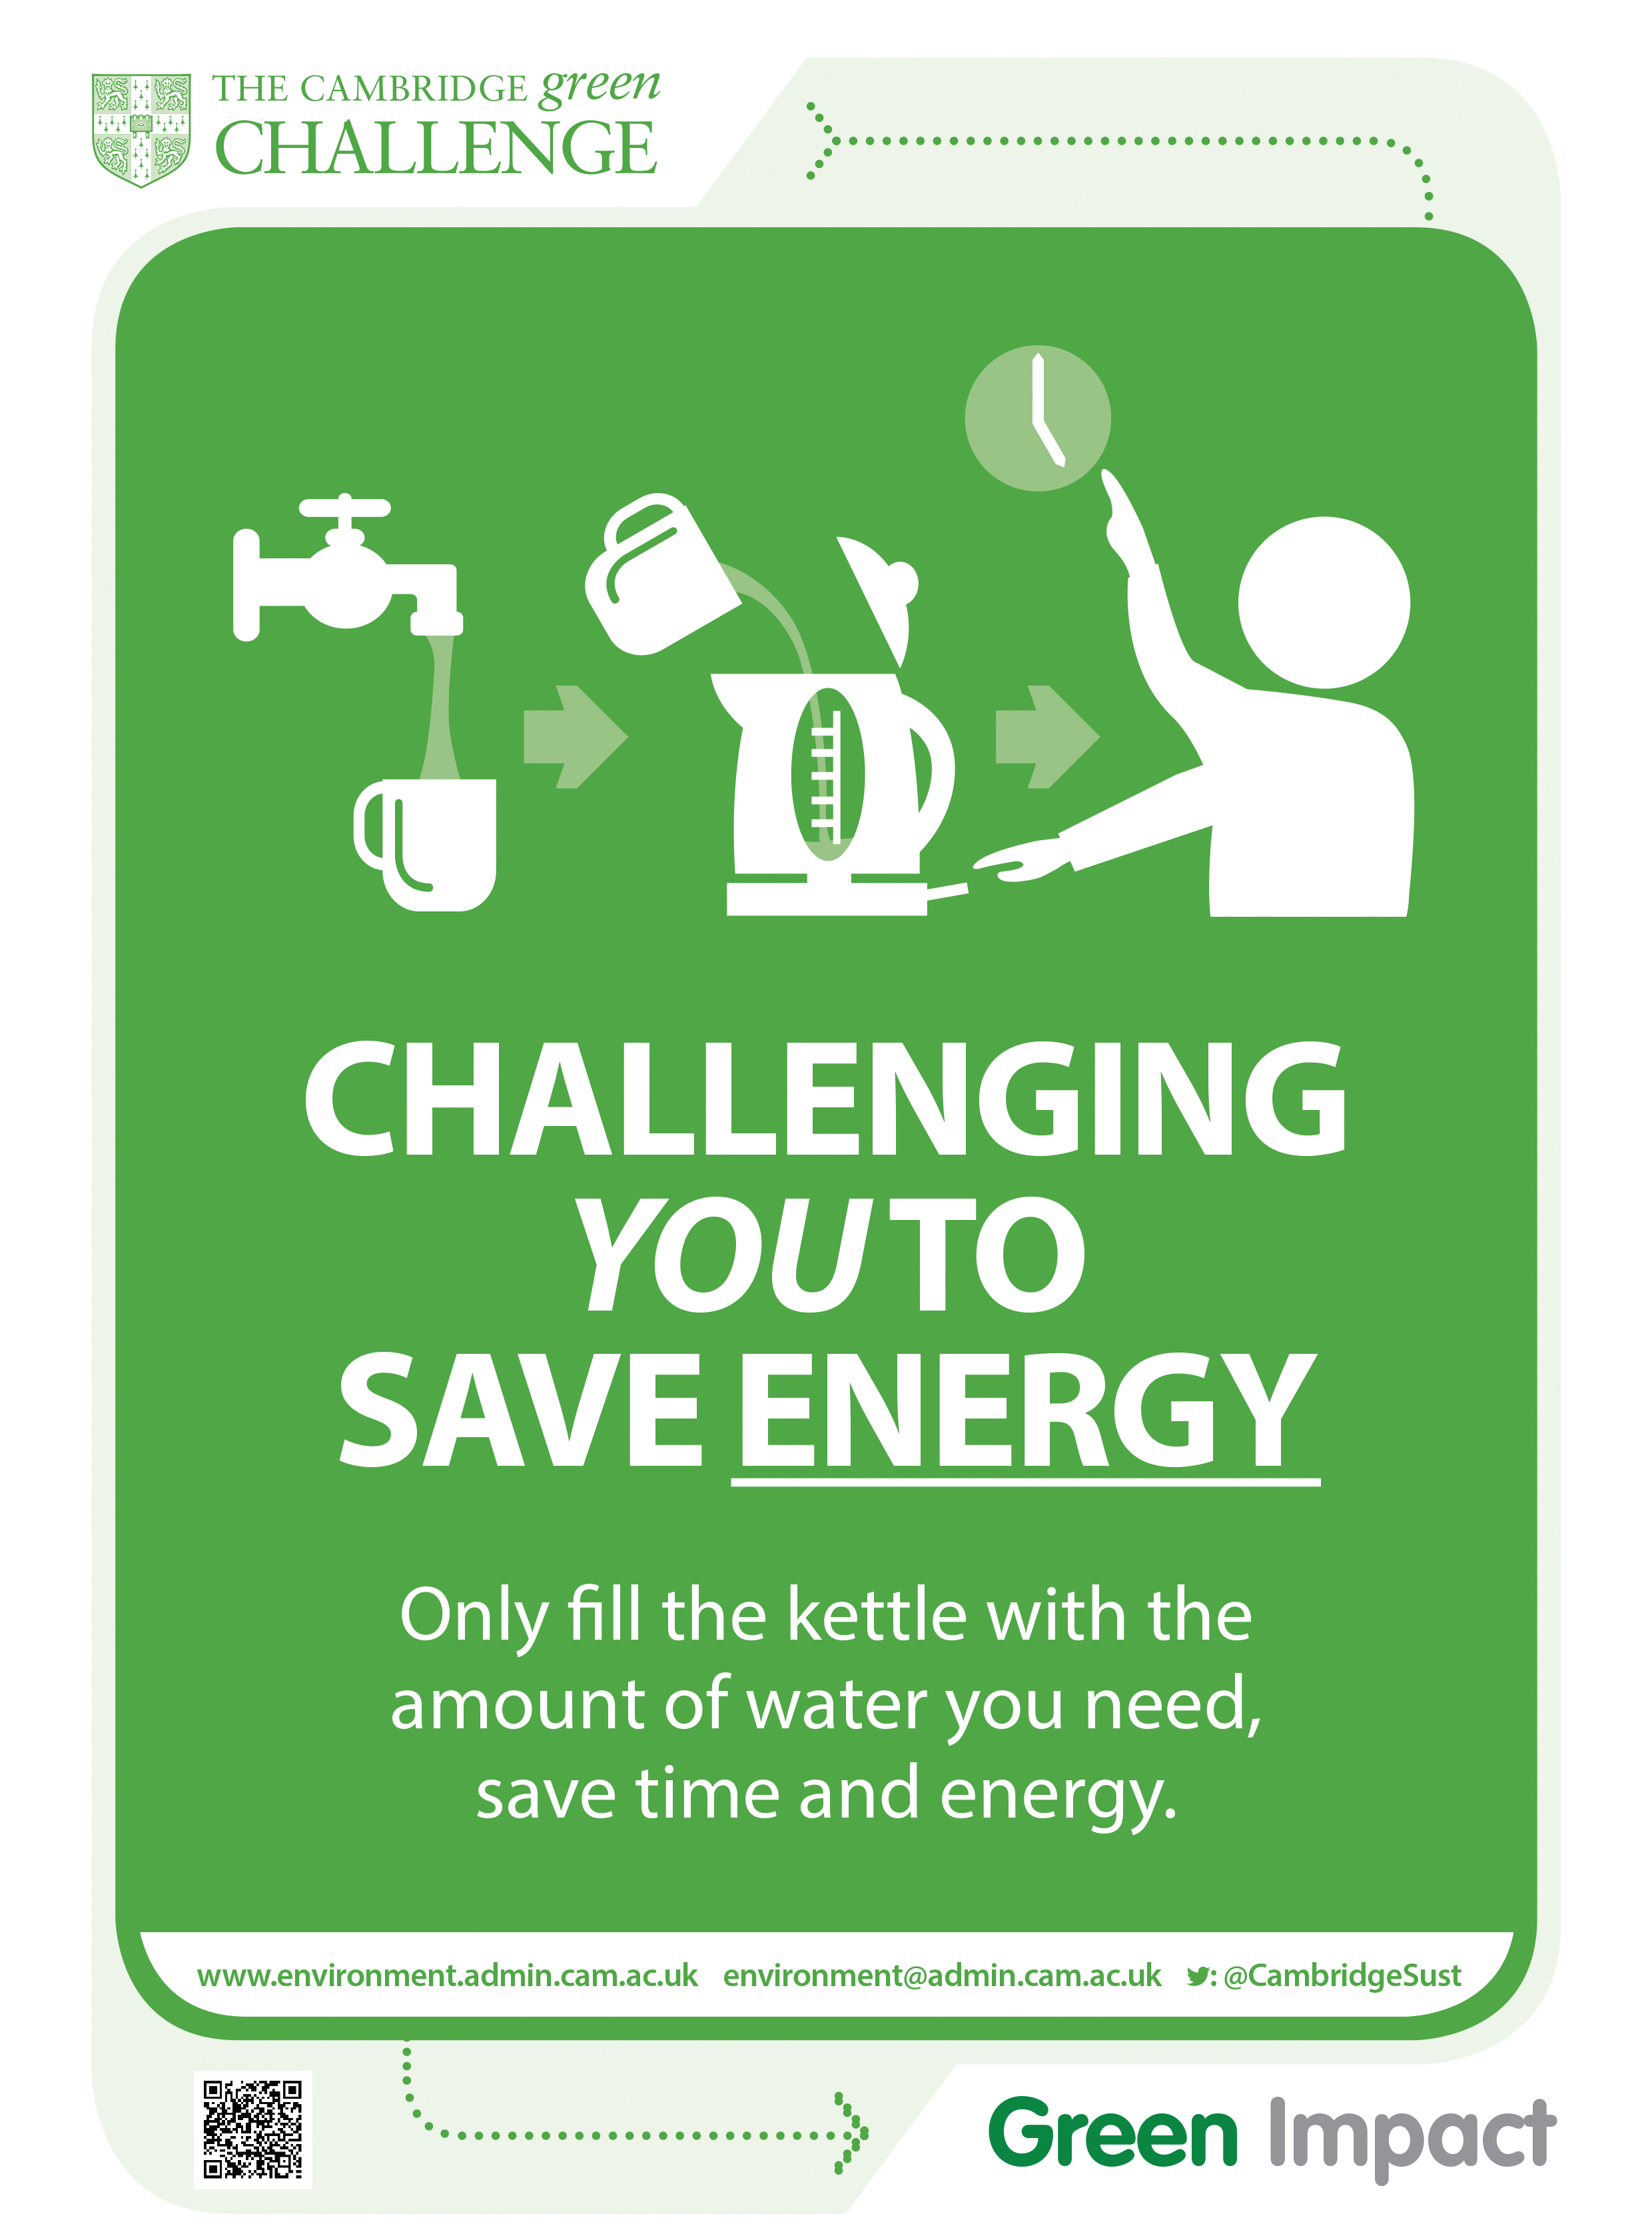 Energy saving poster